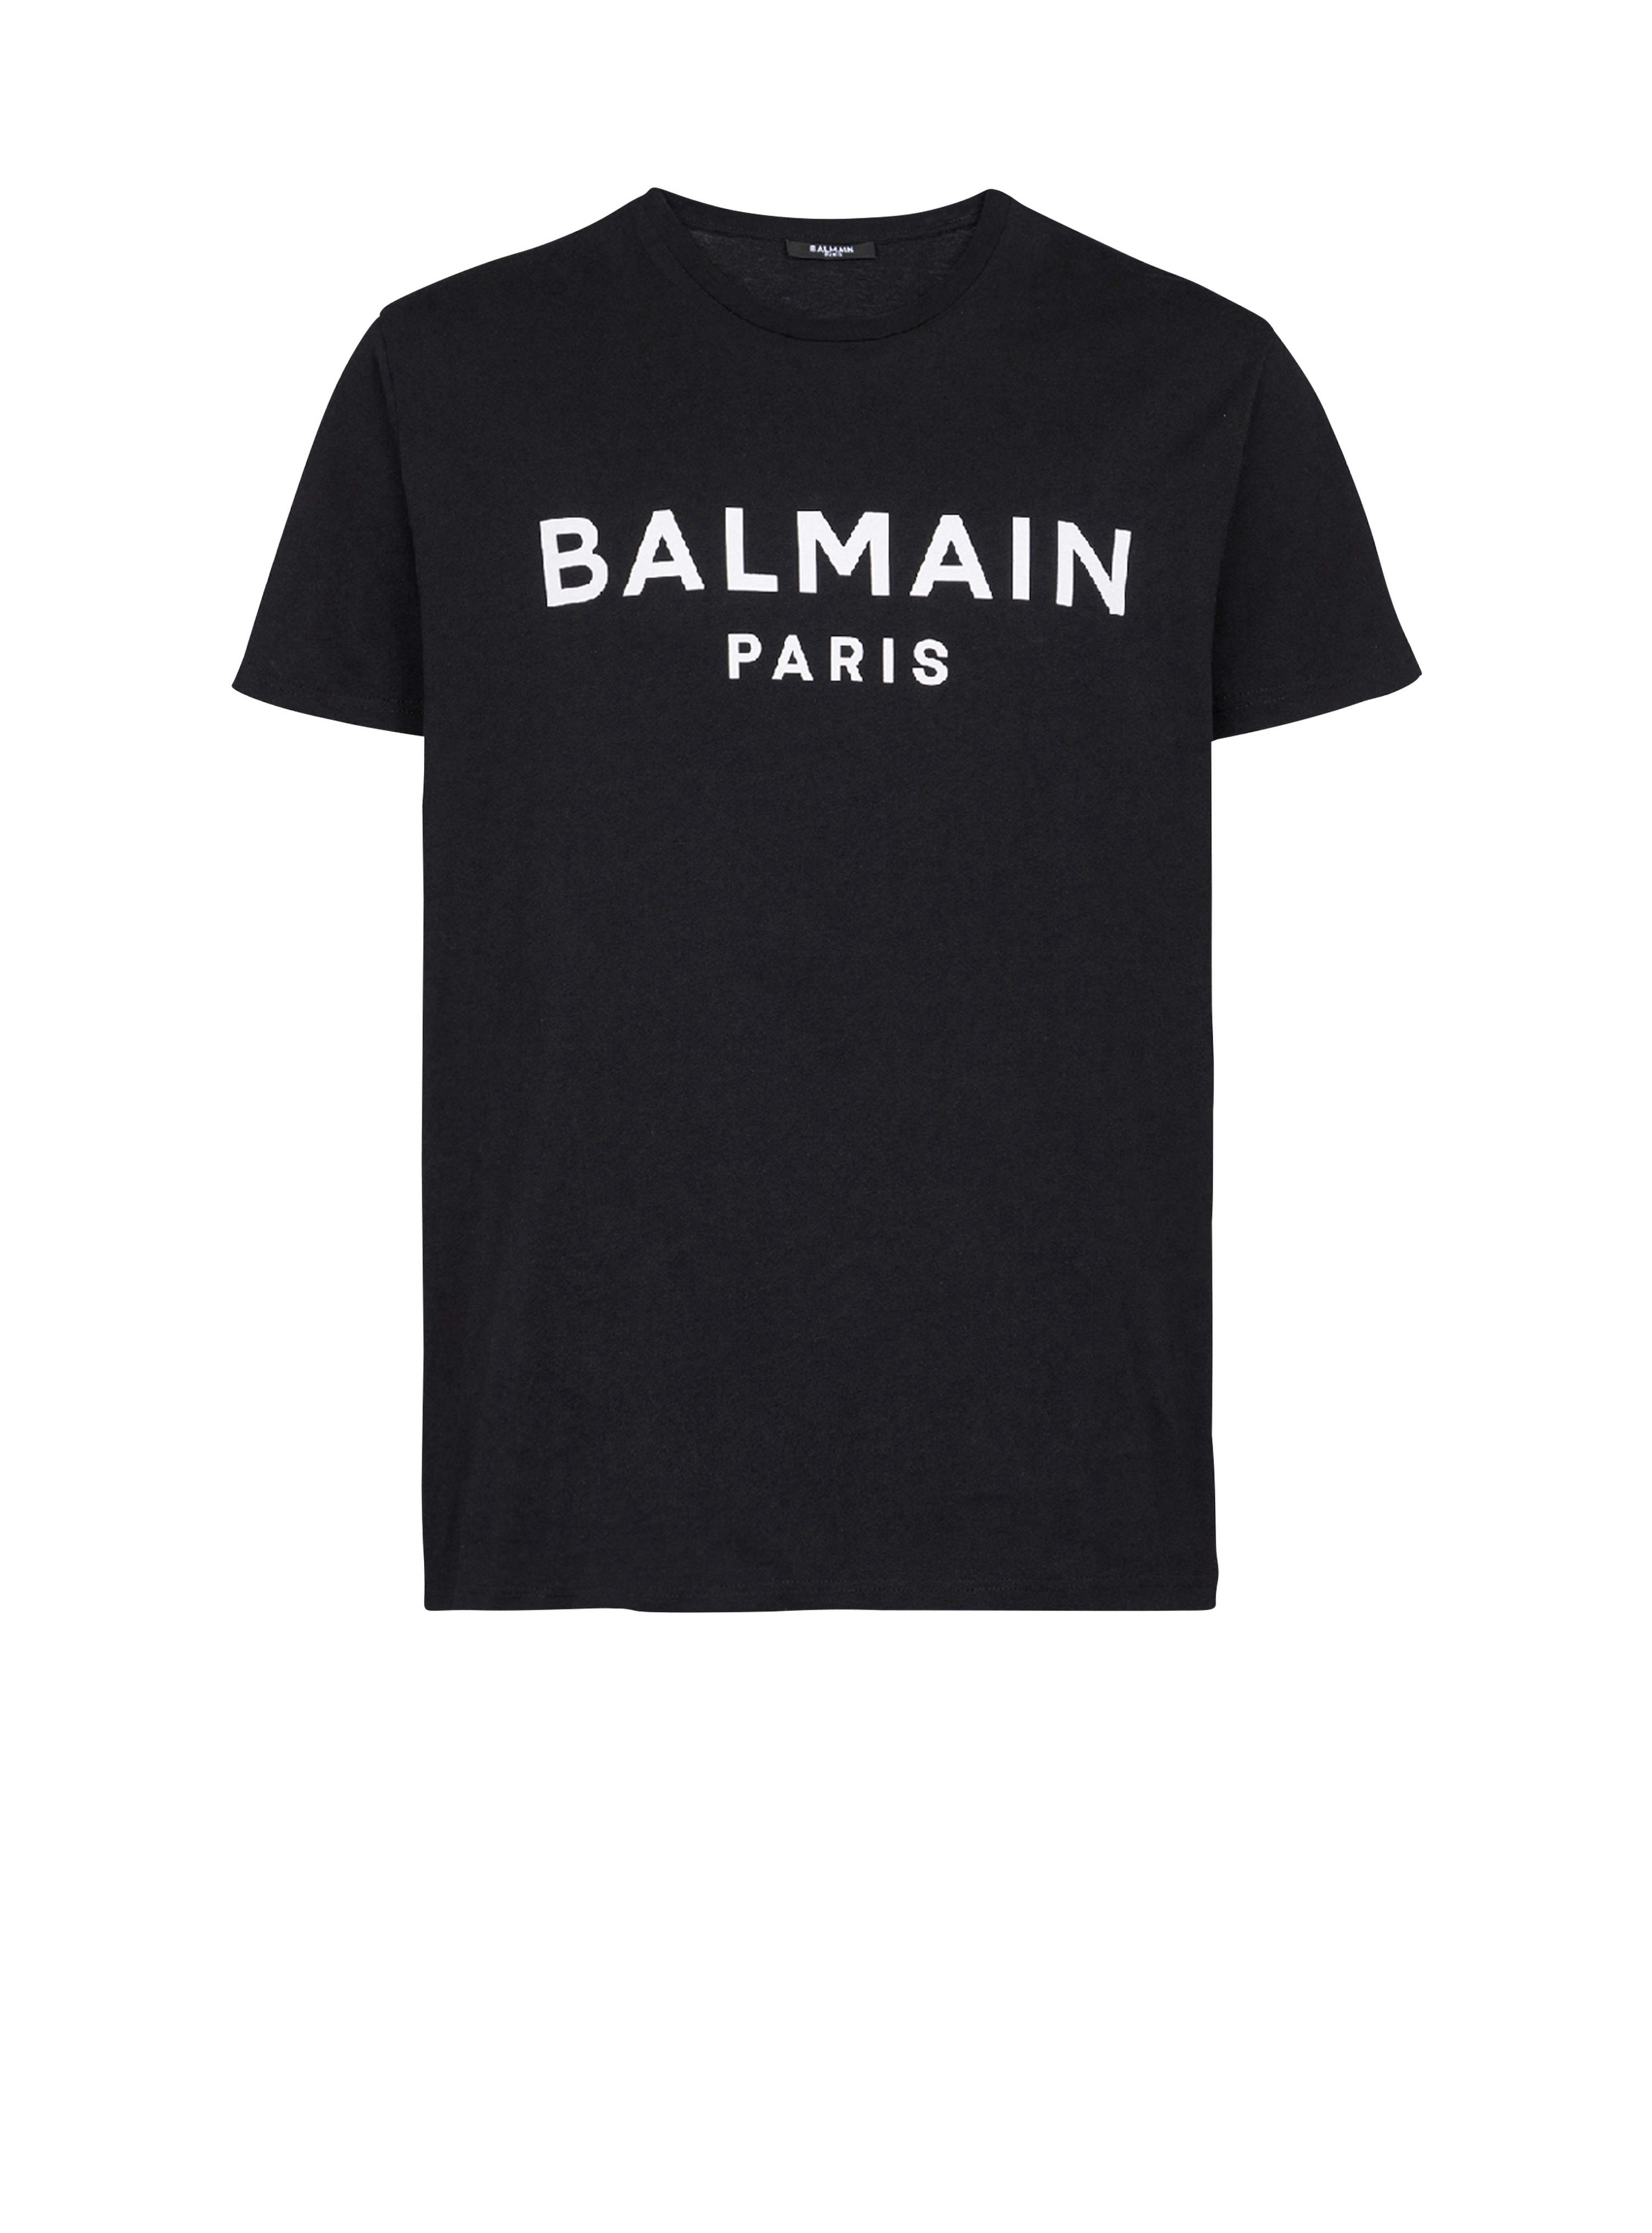 コットン Tシャツ Balmain Parisロゴプリント, 黒